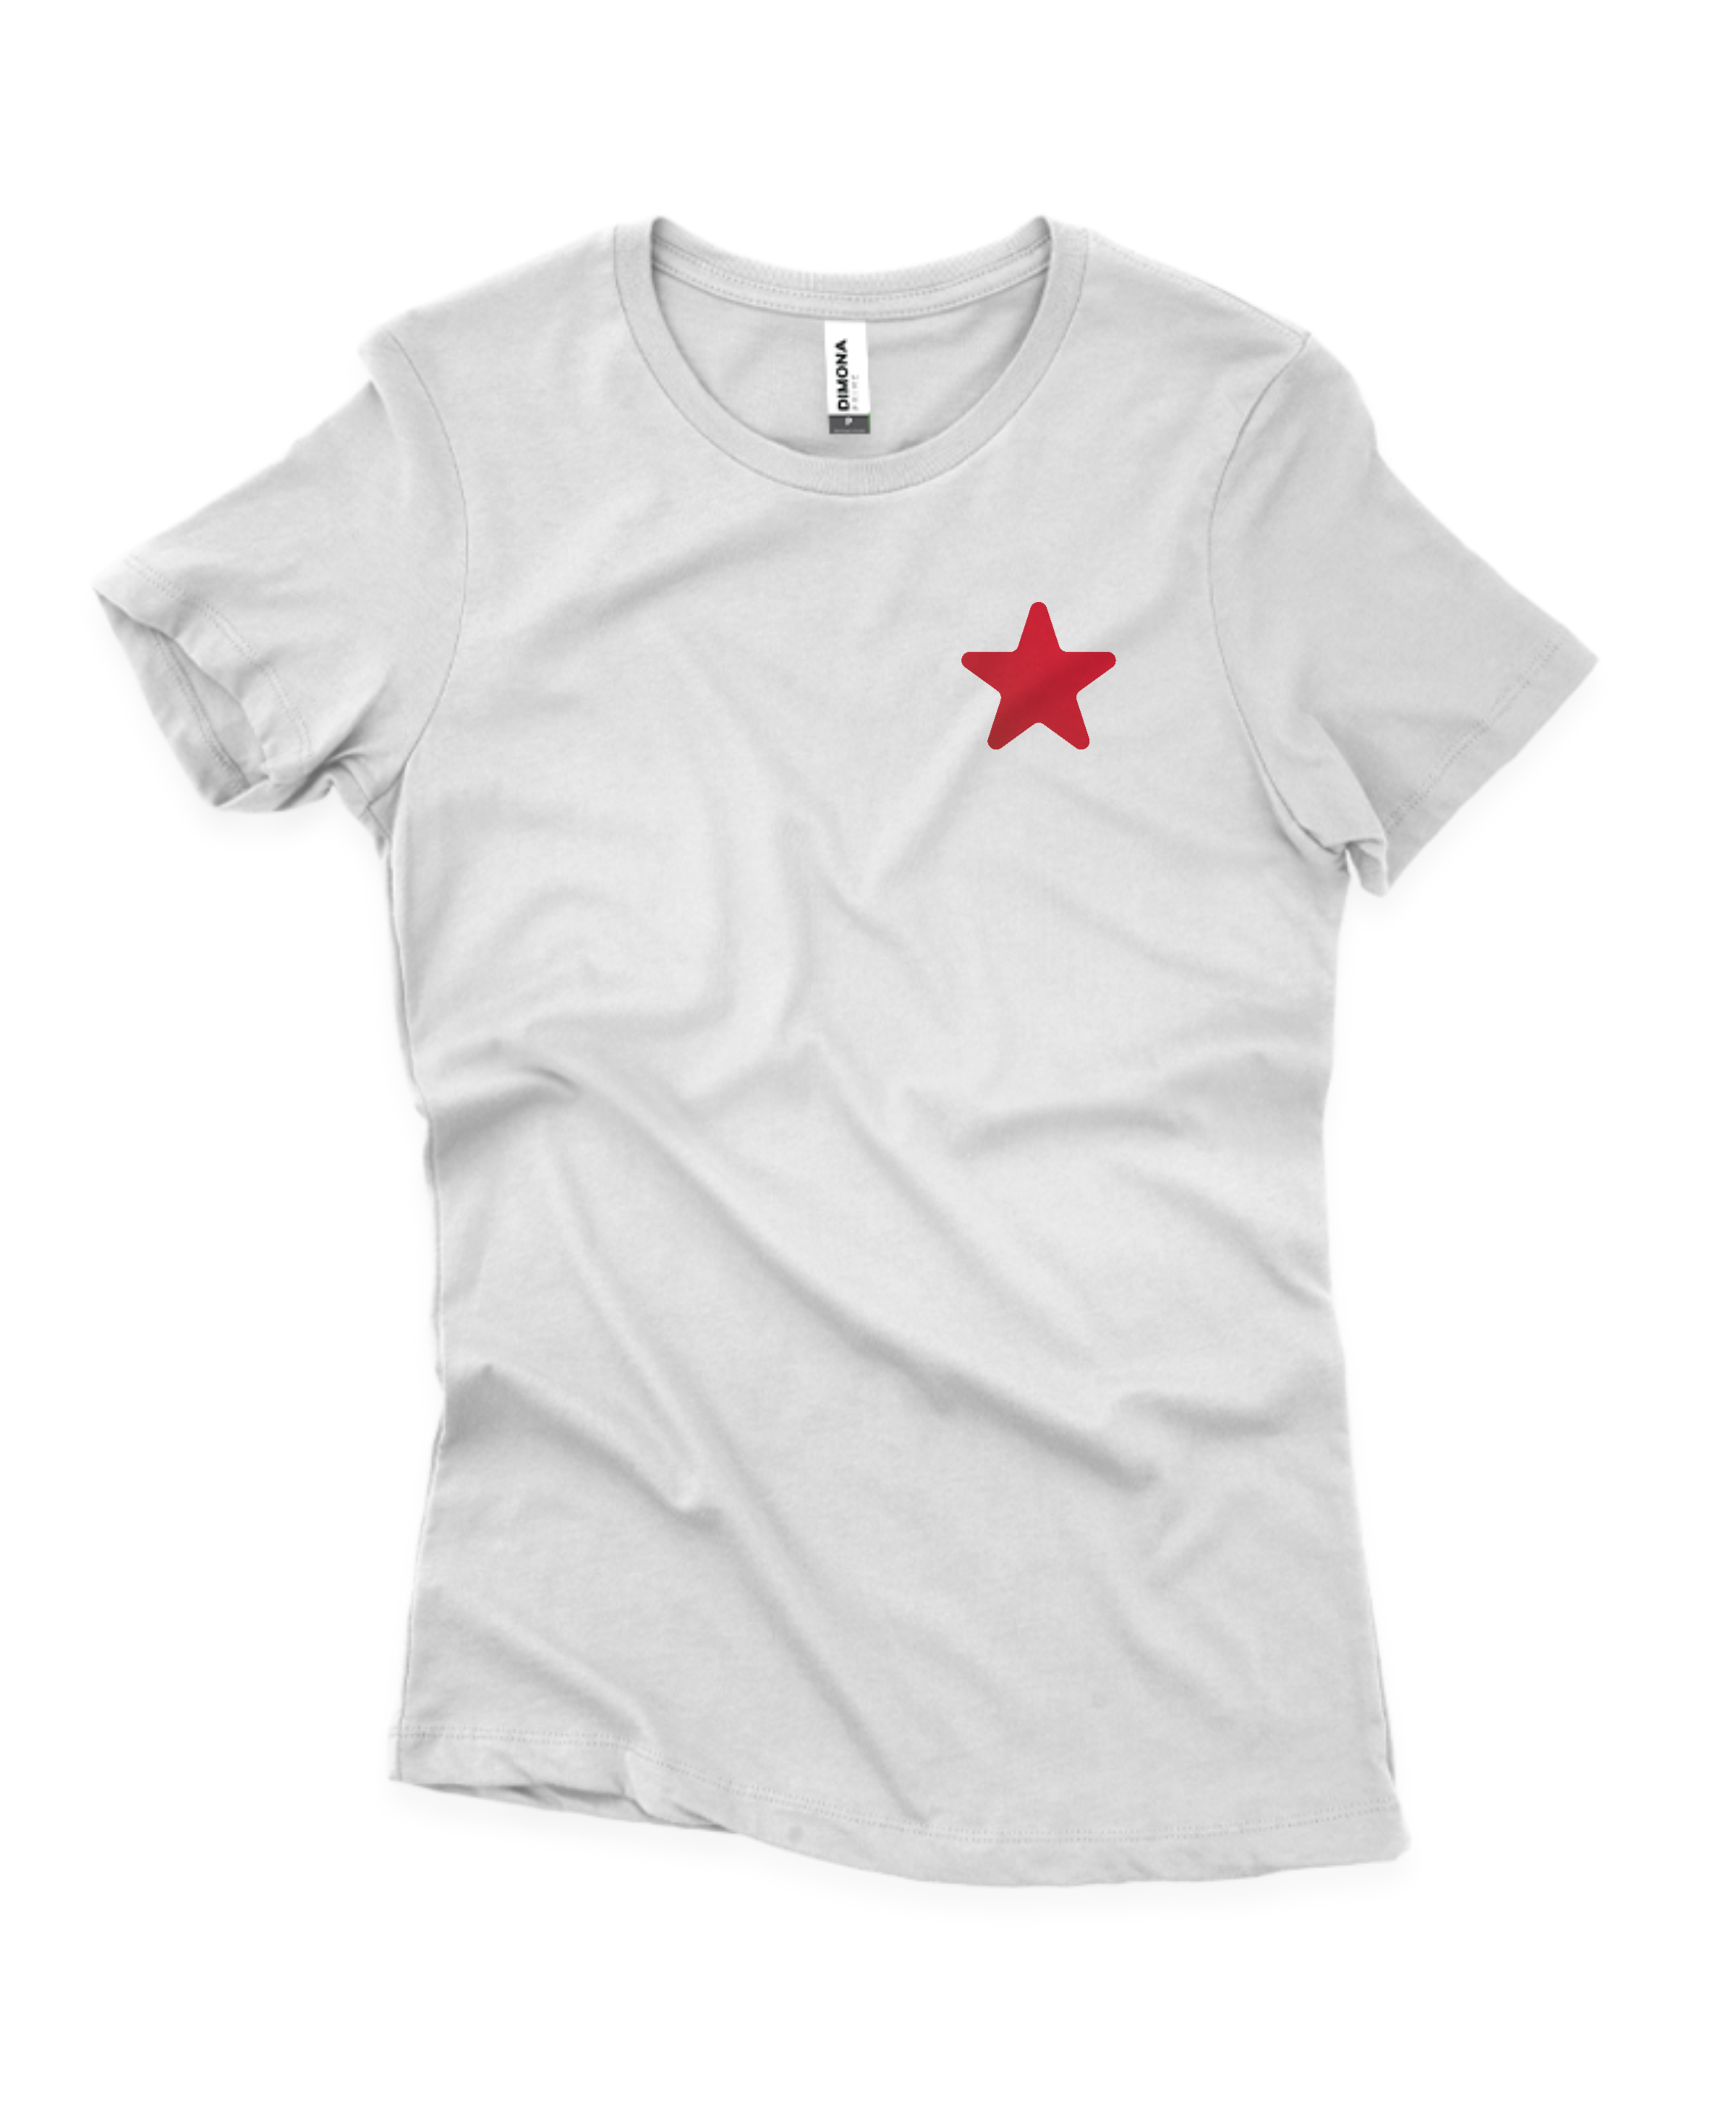 Camiseta Feminina Basico.Com Soft Modal Preto - 102101 - Estrela Mix - Uma  Loja Completa